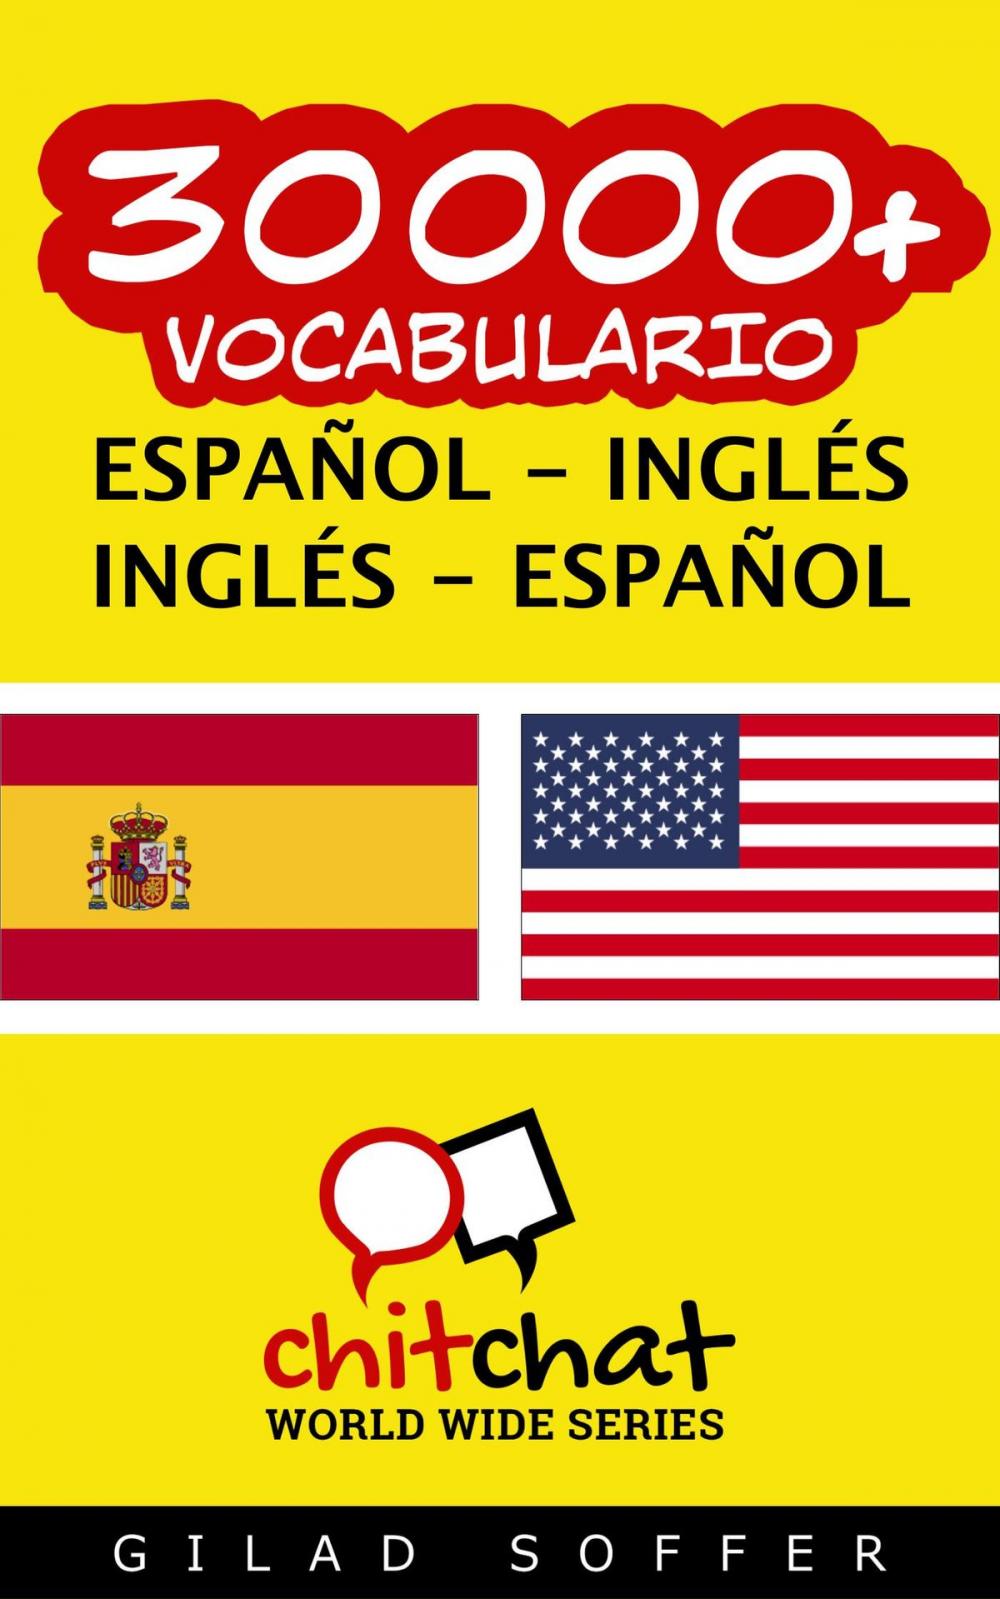 Big bigCover of 30000+ vocabulario español - Inglés